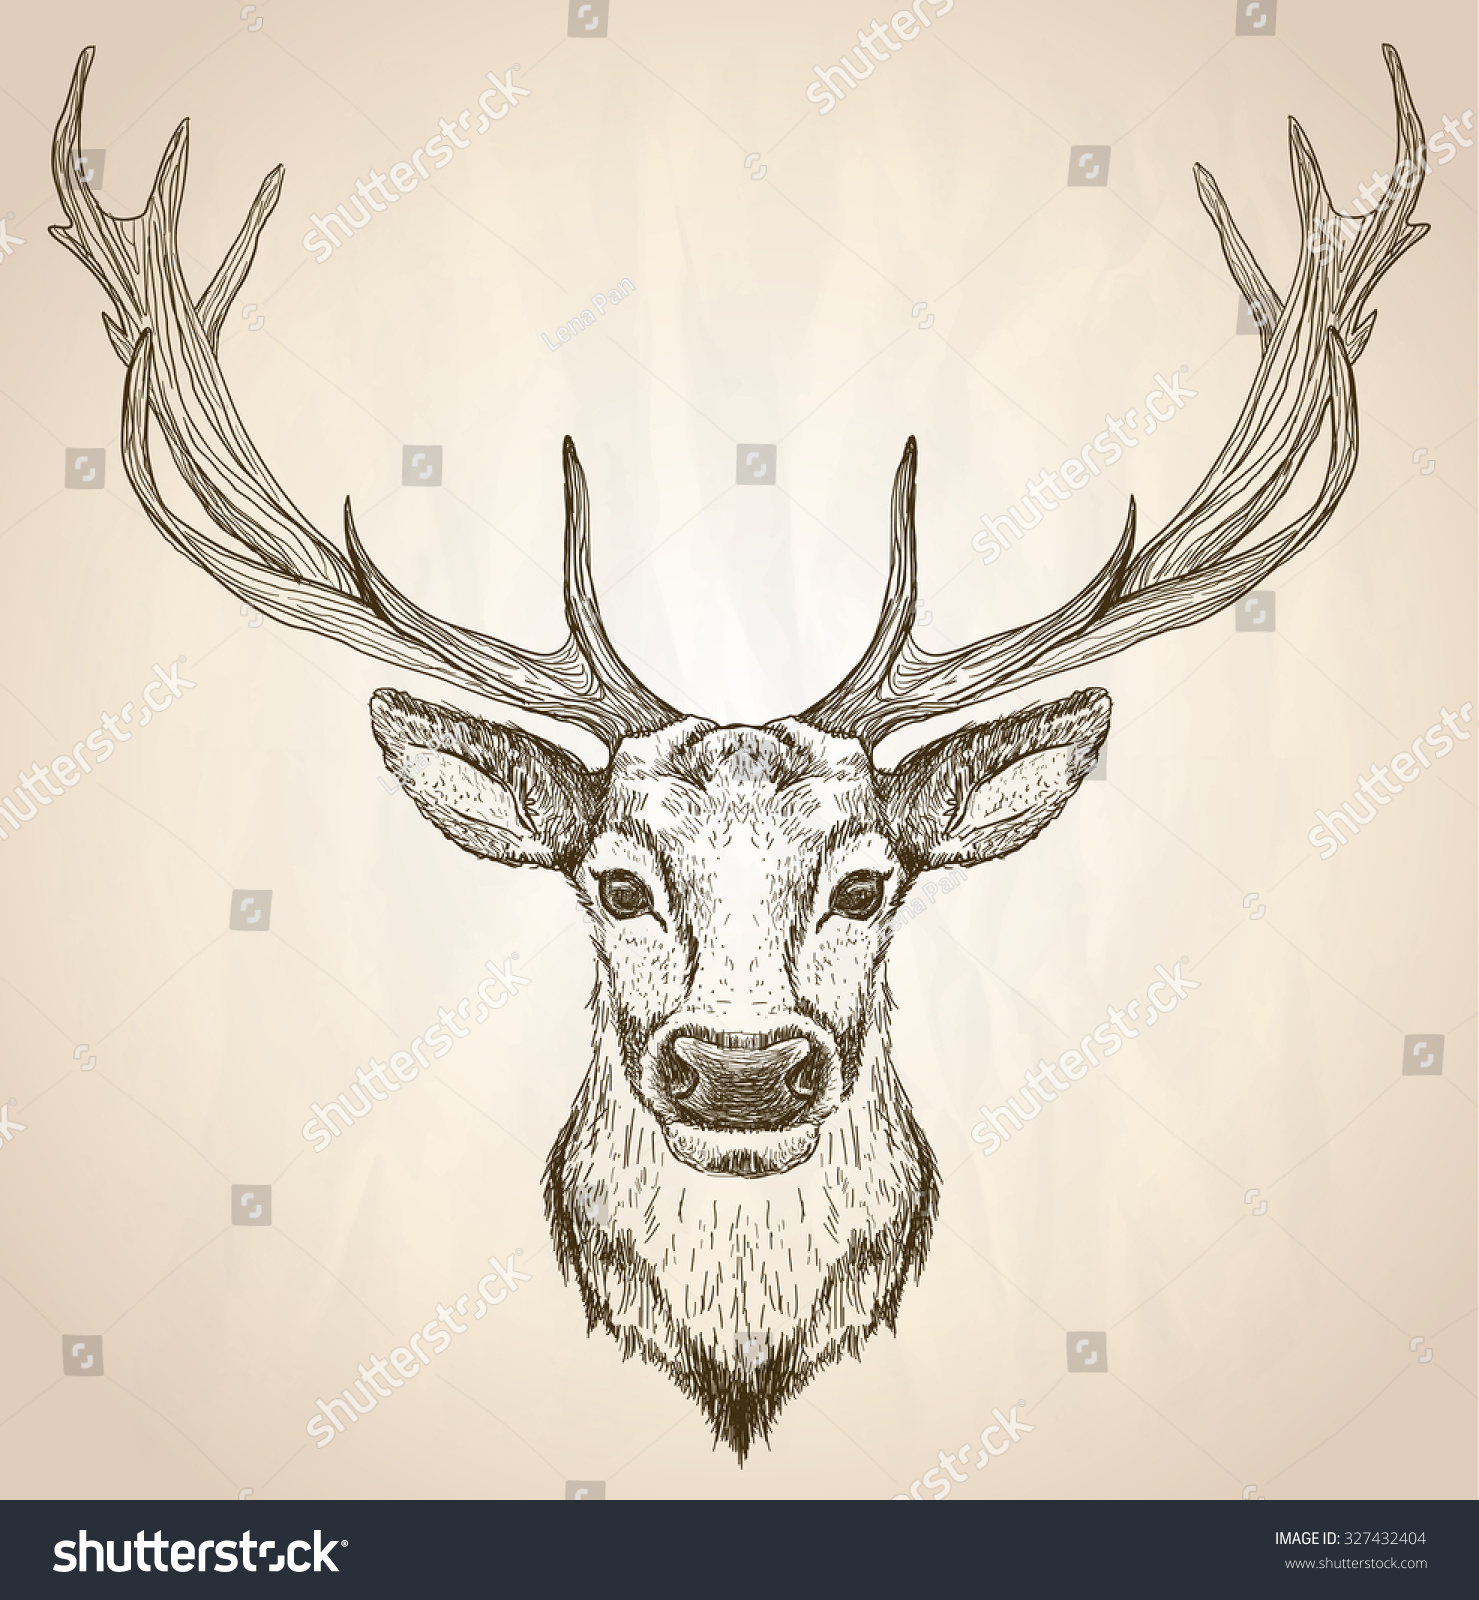 大きな枝角を持つ鹿の頭の手描きのグラフィックススケッチイラスト 正面図 ベクター野生生物ポスター のベクター画像素材 ロイヤリティフリー